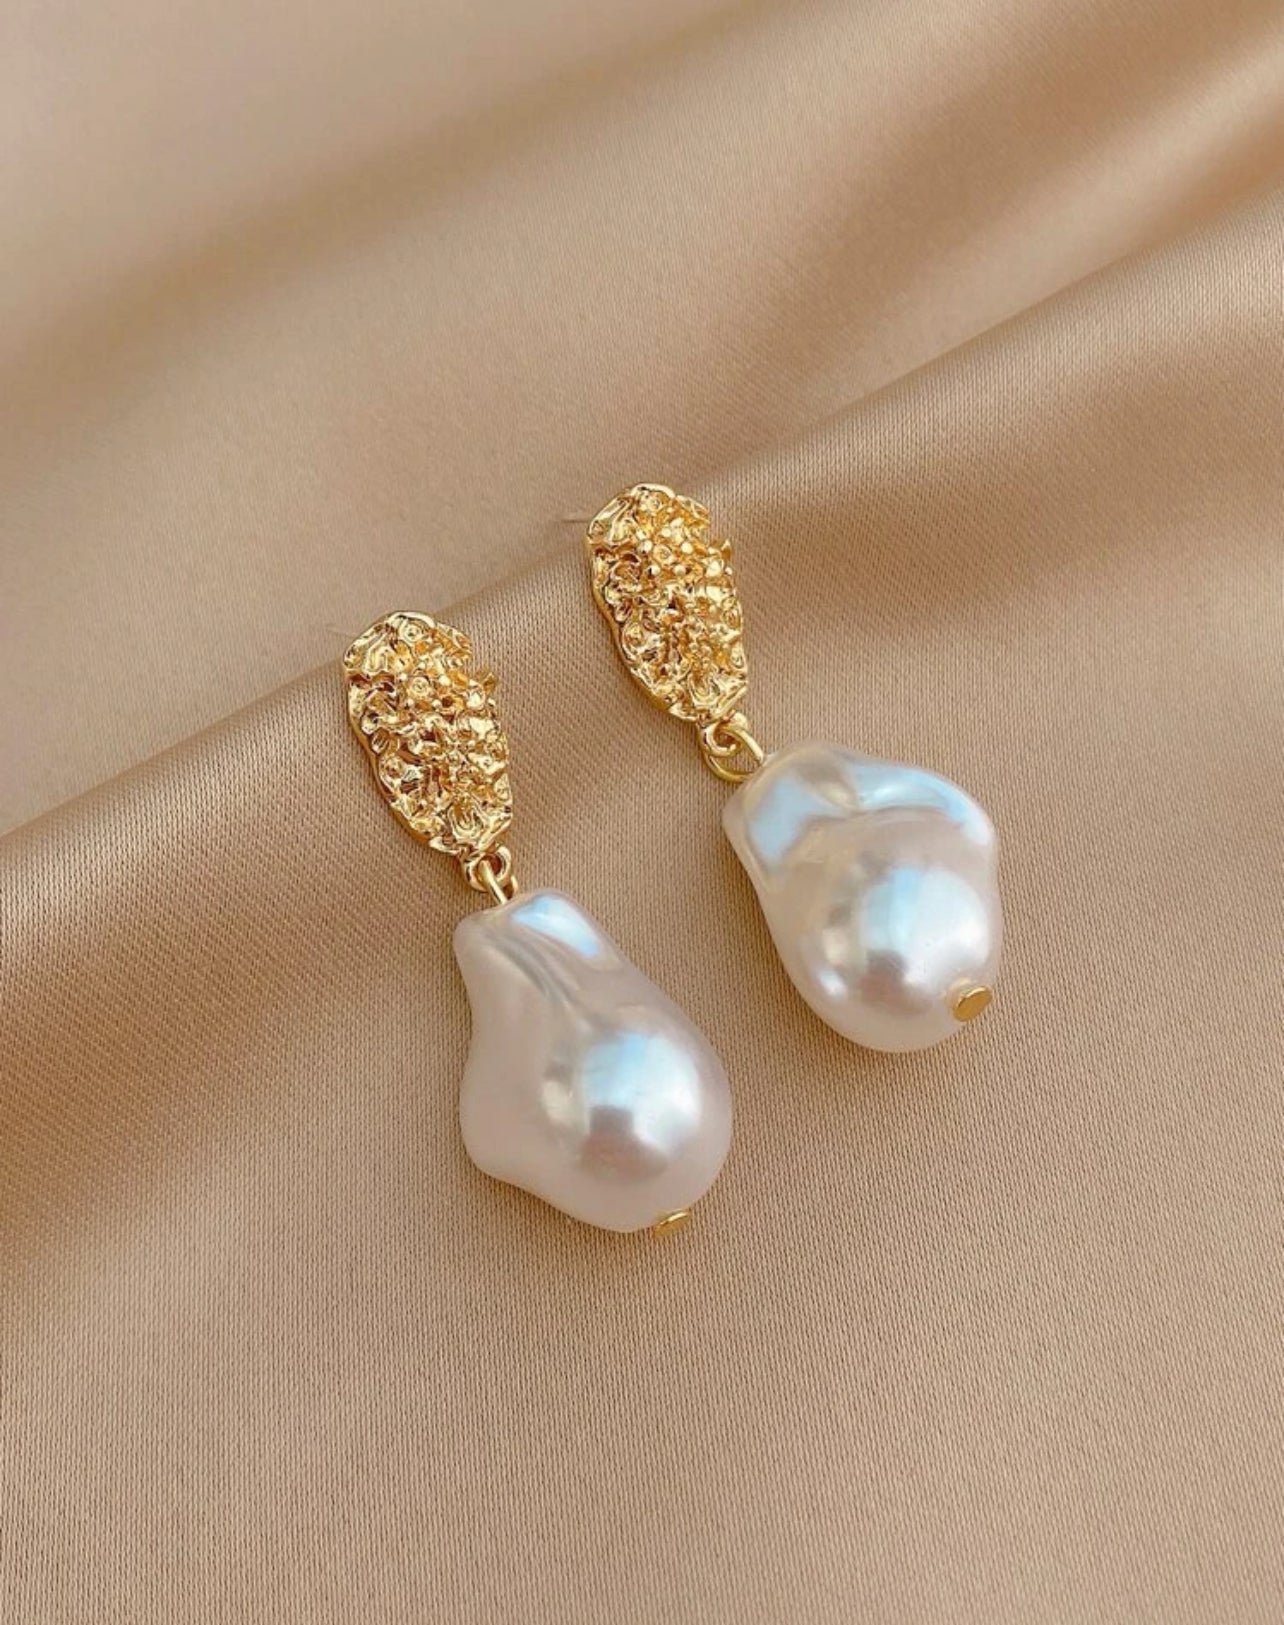 Solei earrings